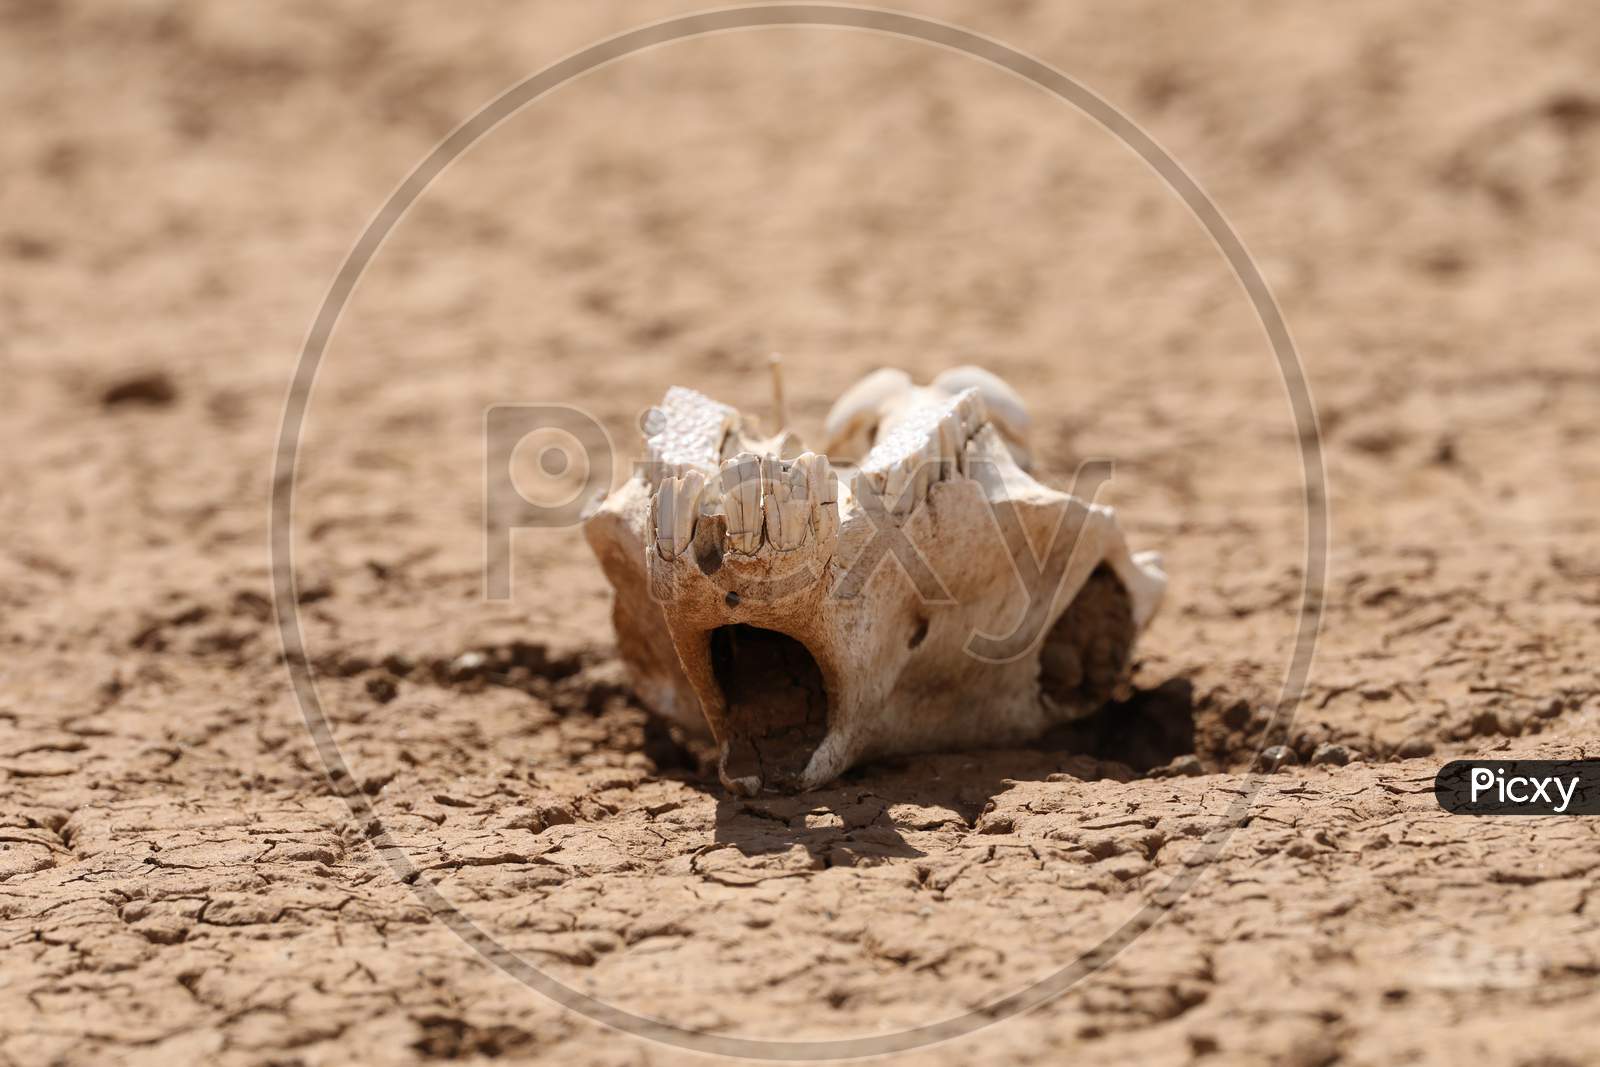 A Skull in Kenya